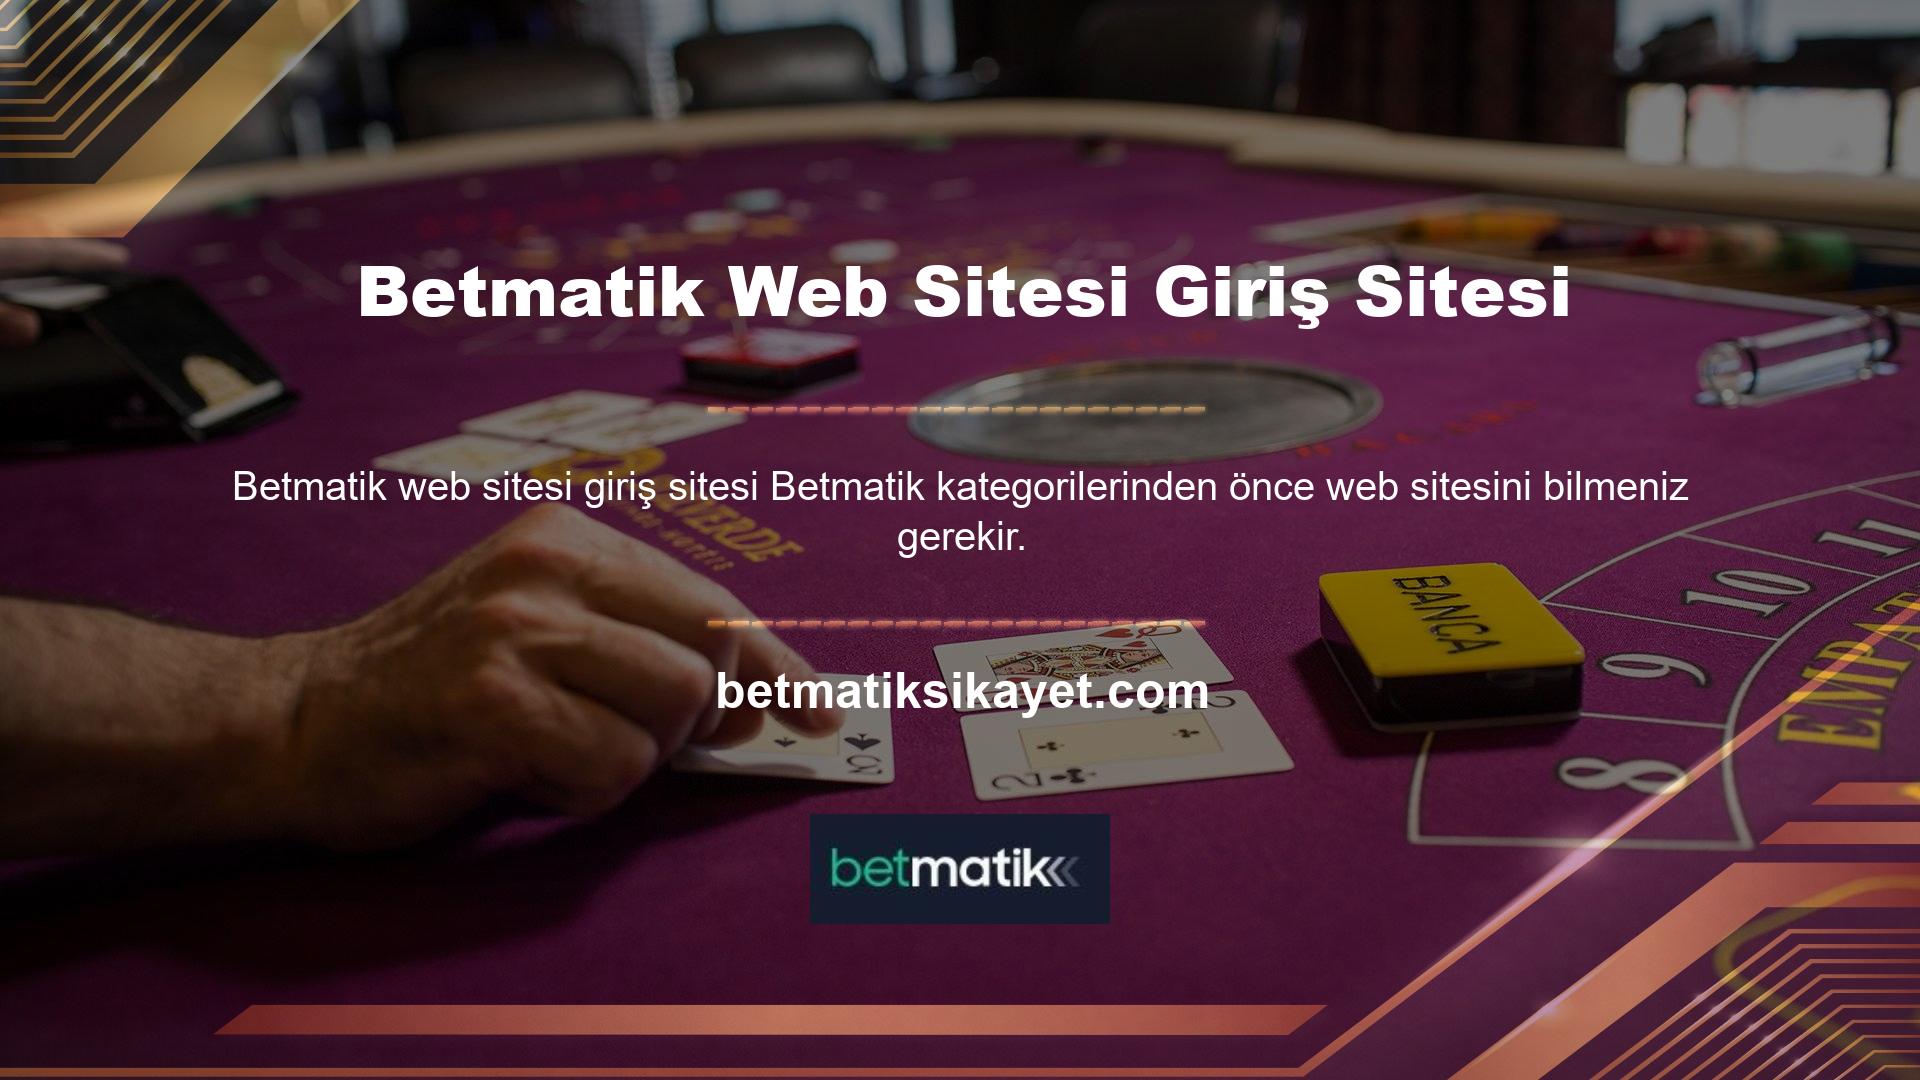 Betmatik web sitesi giriş sitesi web sitesi gerçekten olumlu bir izlenim bırakıyor